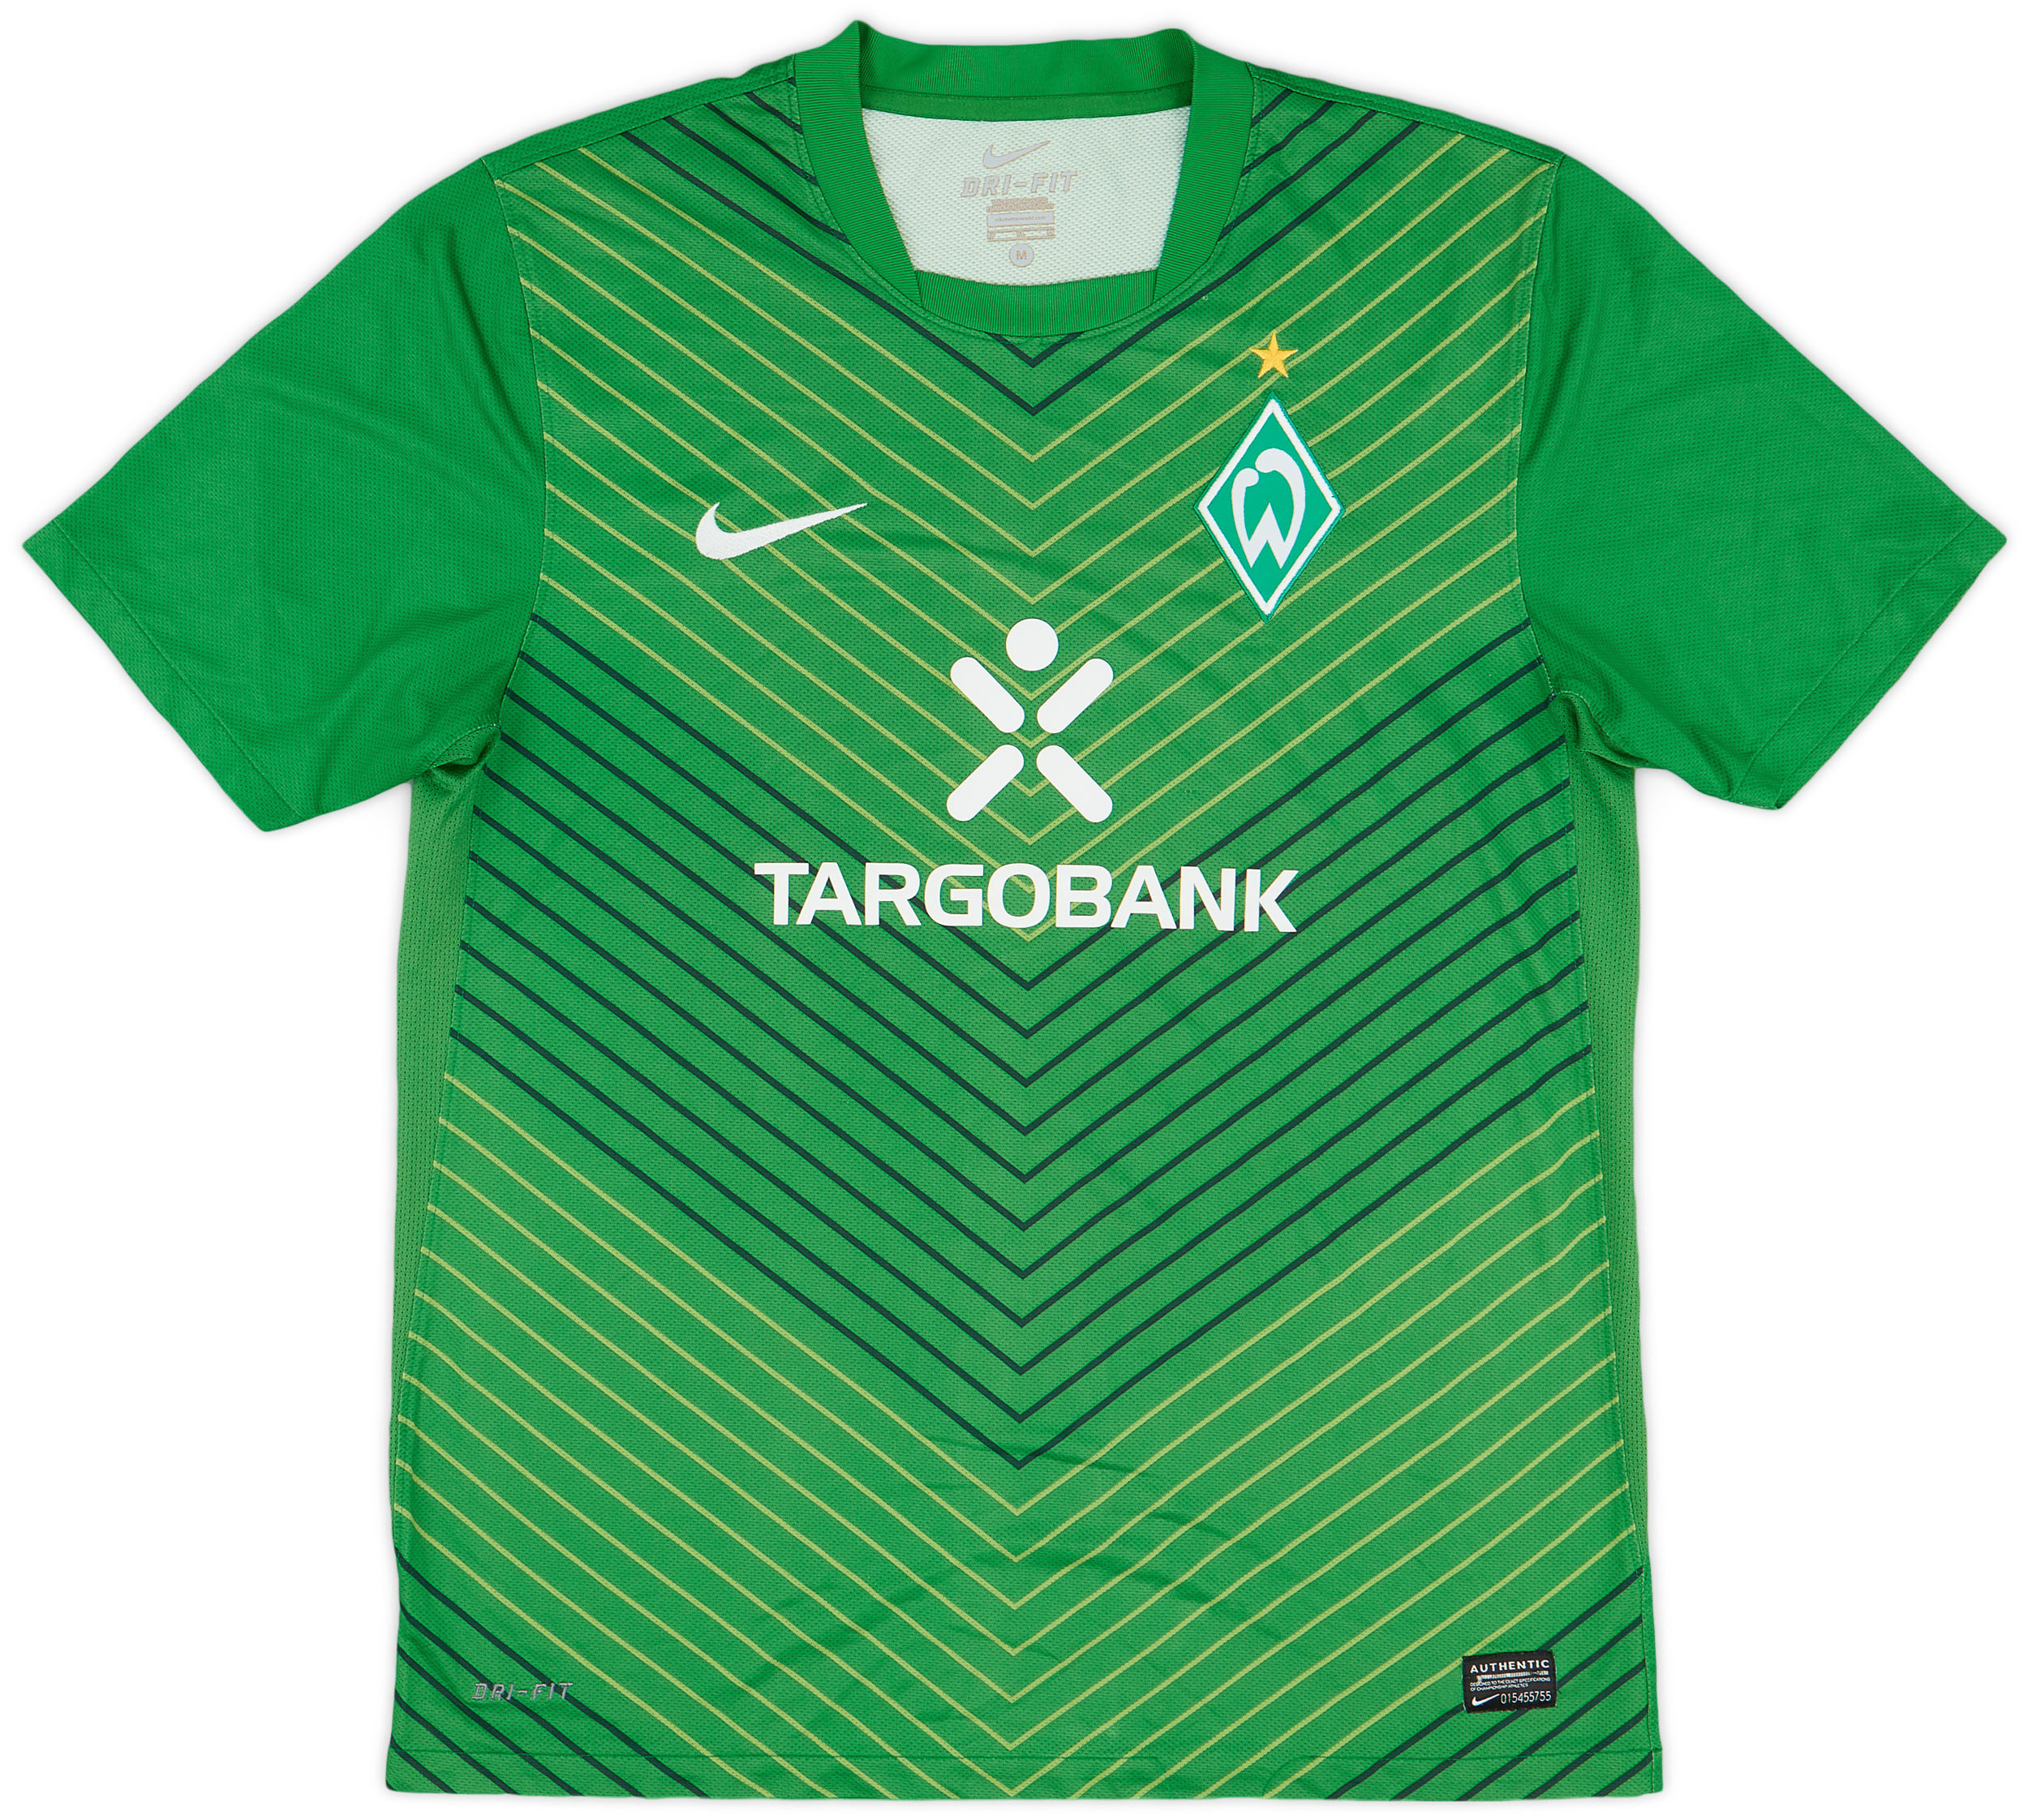 2011-12 Werder Bremen Player Issue Home Shirt - 8/10 - ()